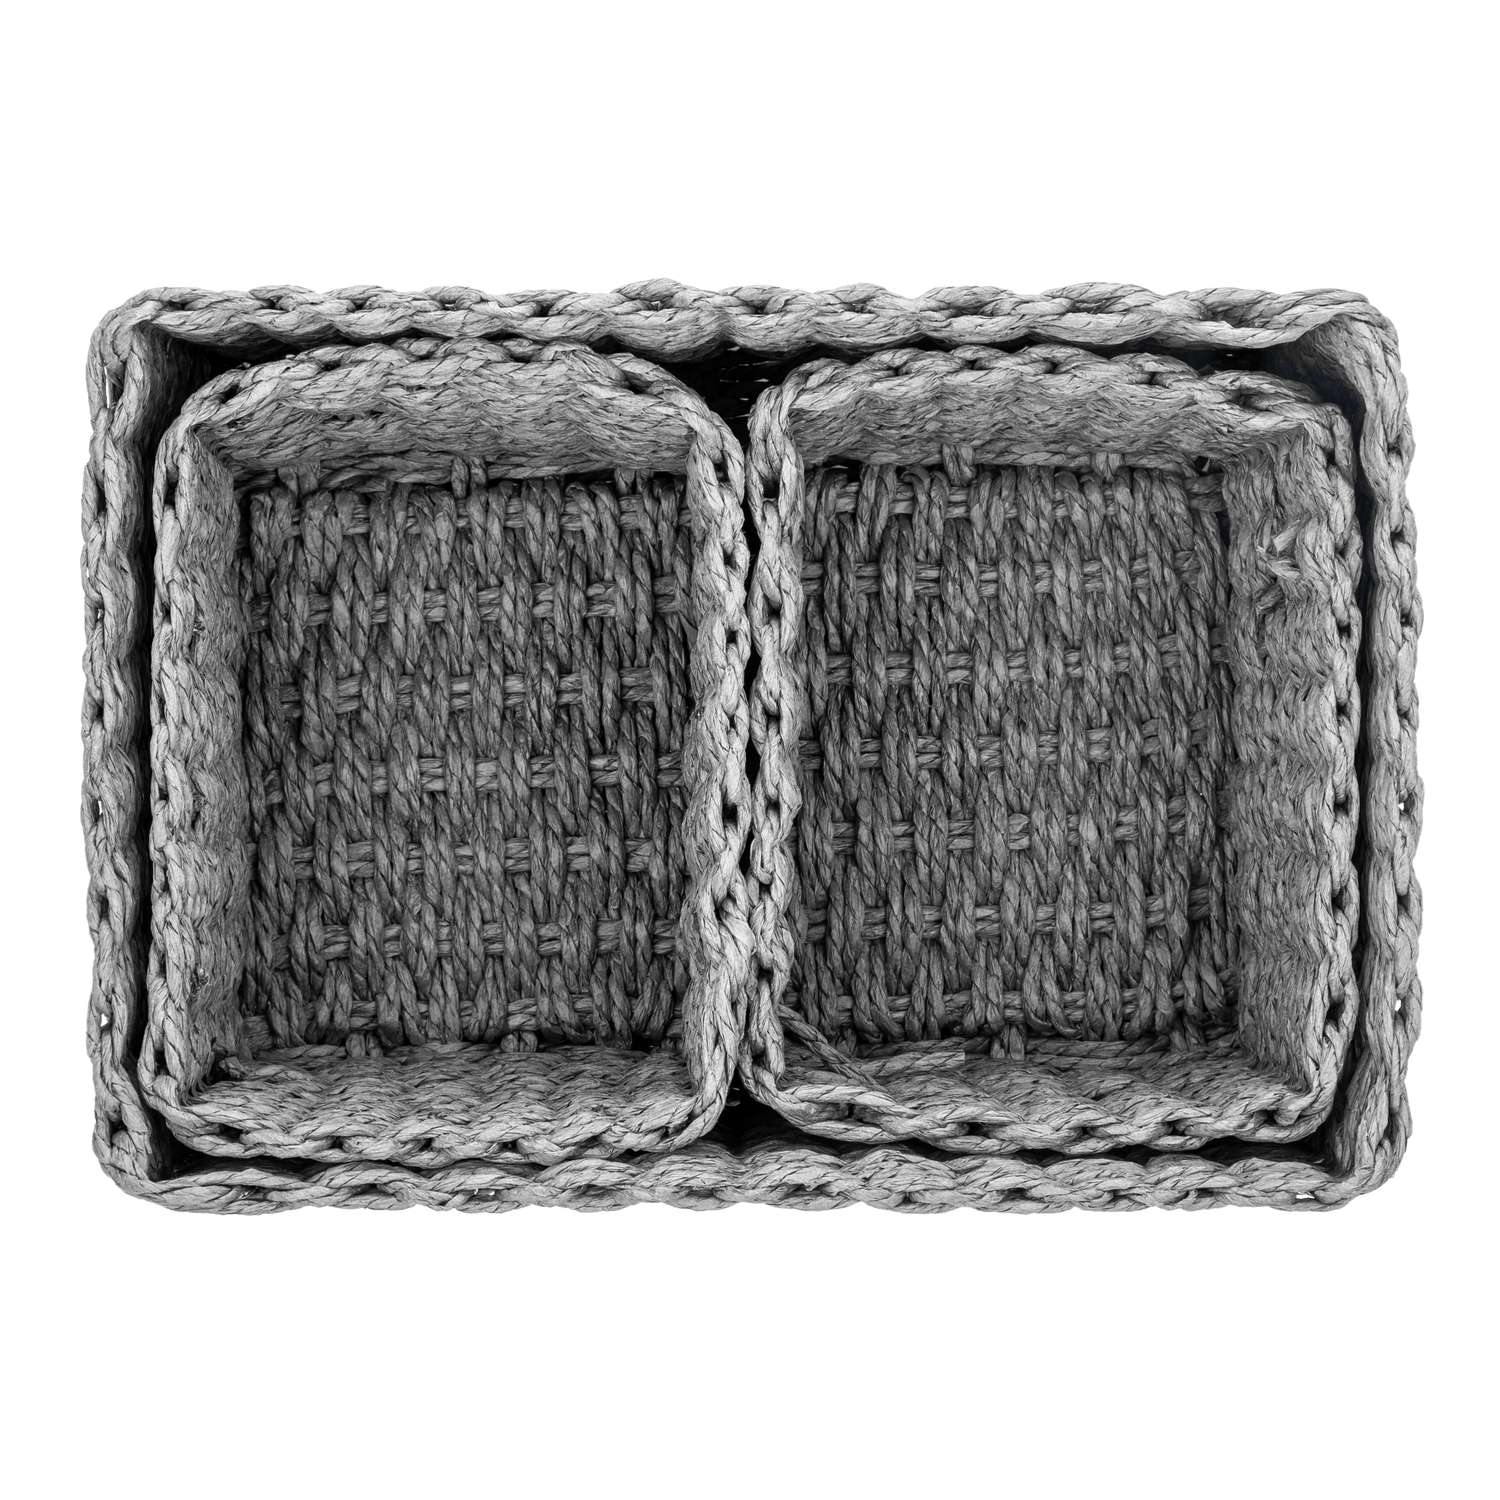 Набор плетеных корзинок El Casa 3 шт серый 1 корзина 28х22х14 см. 2 корзины 18х14х11 см - фото 6